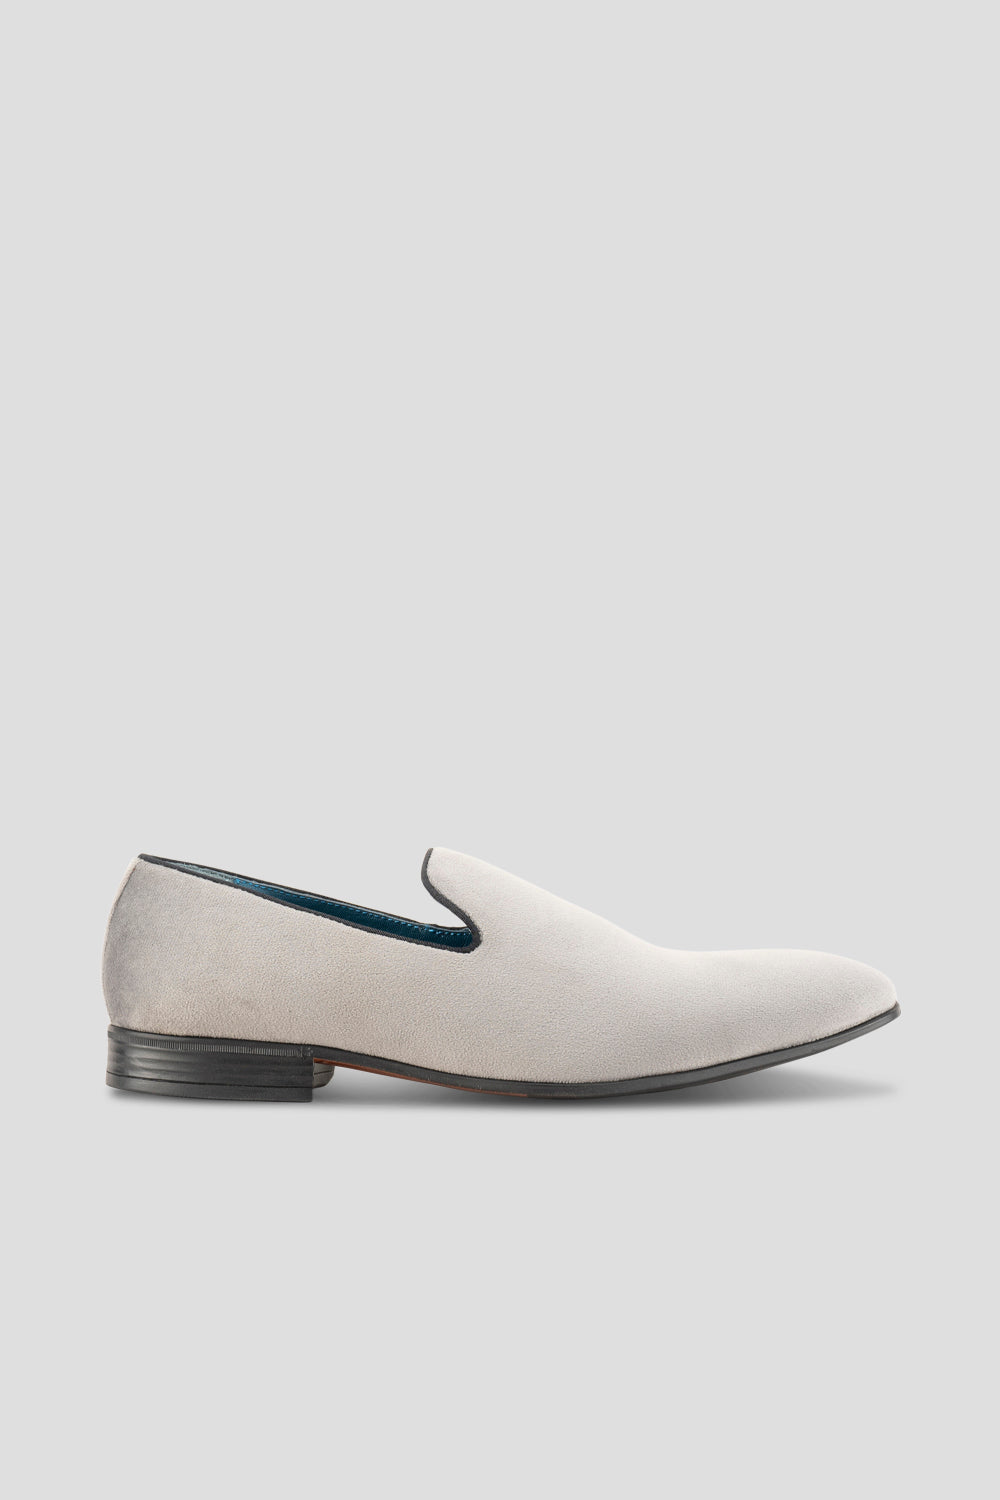 Alfie Grey velvet slippers